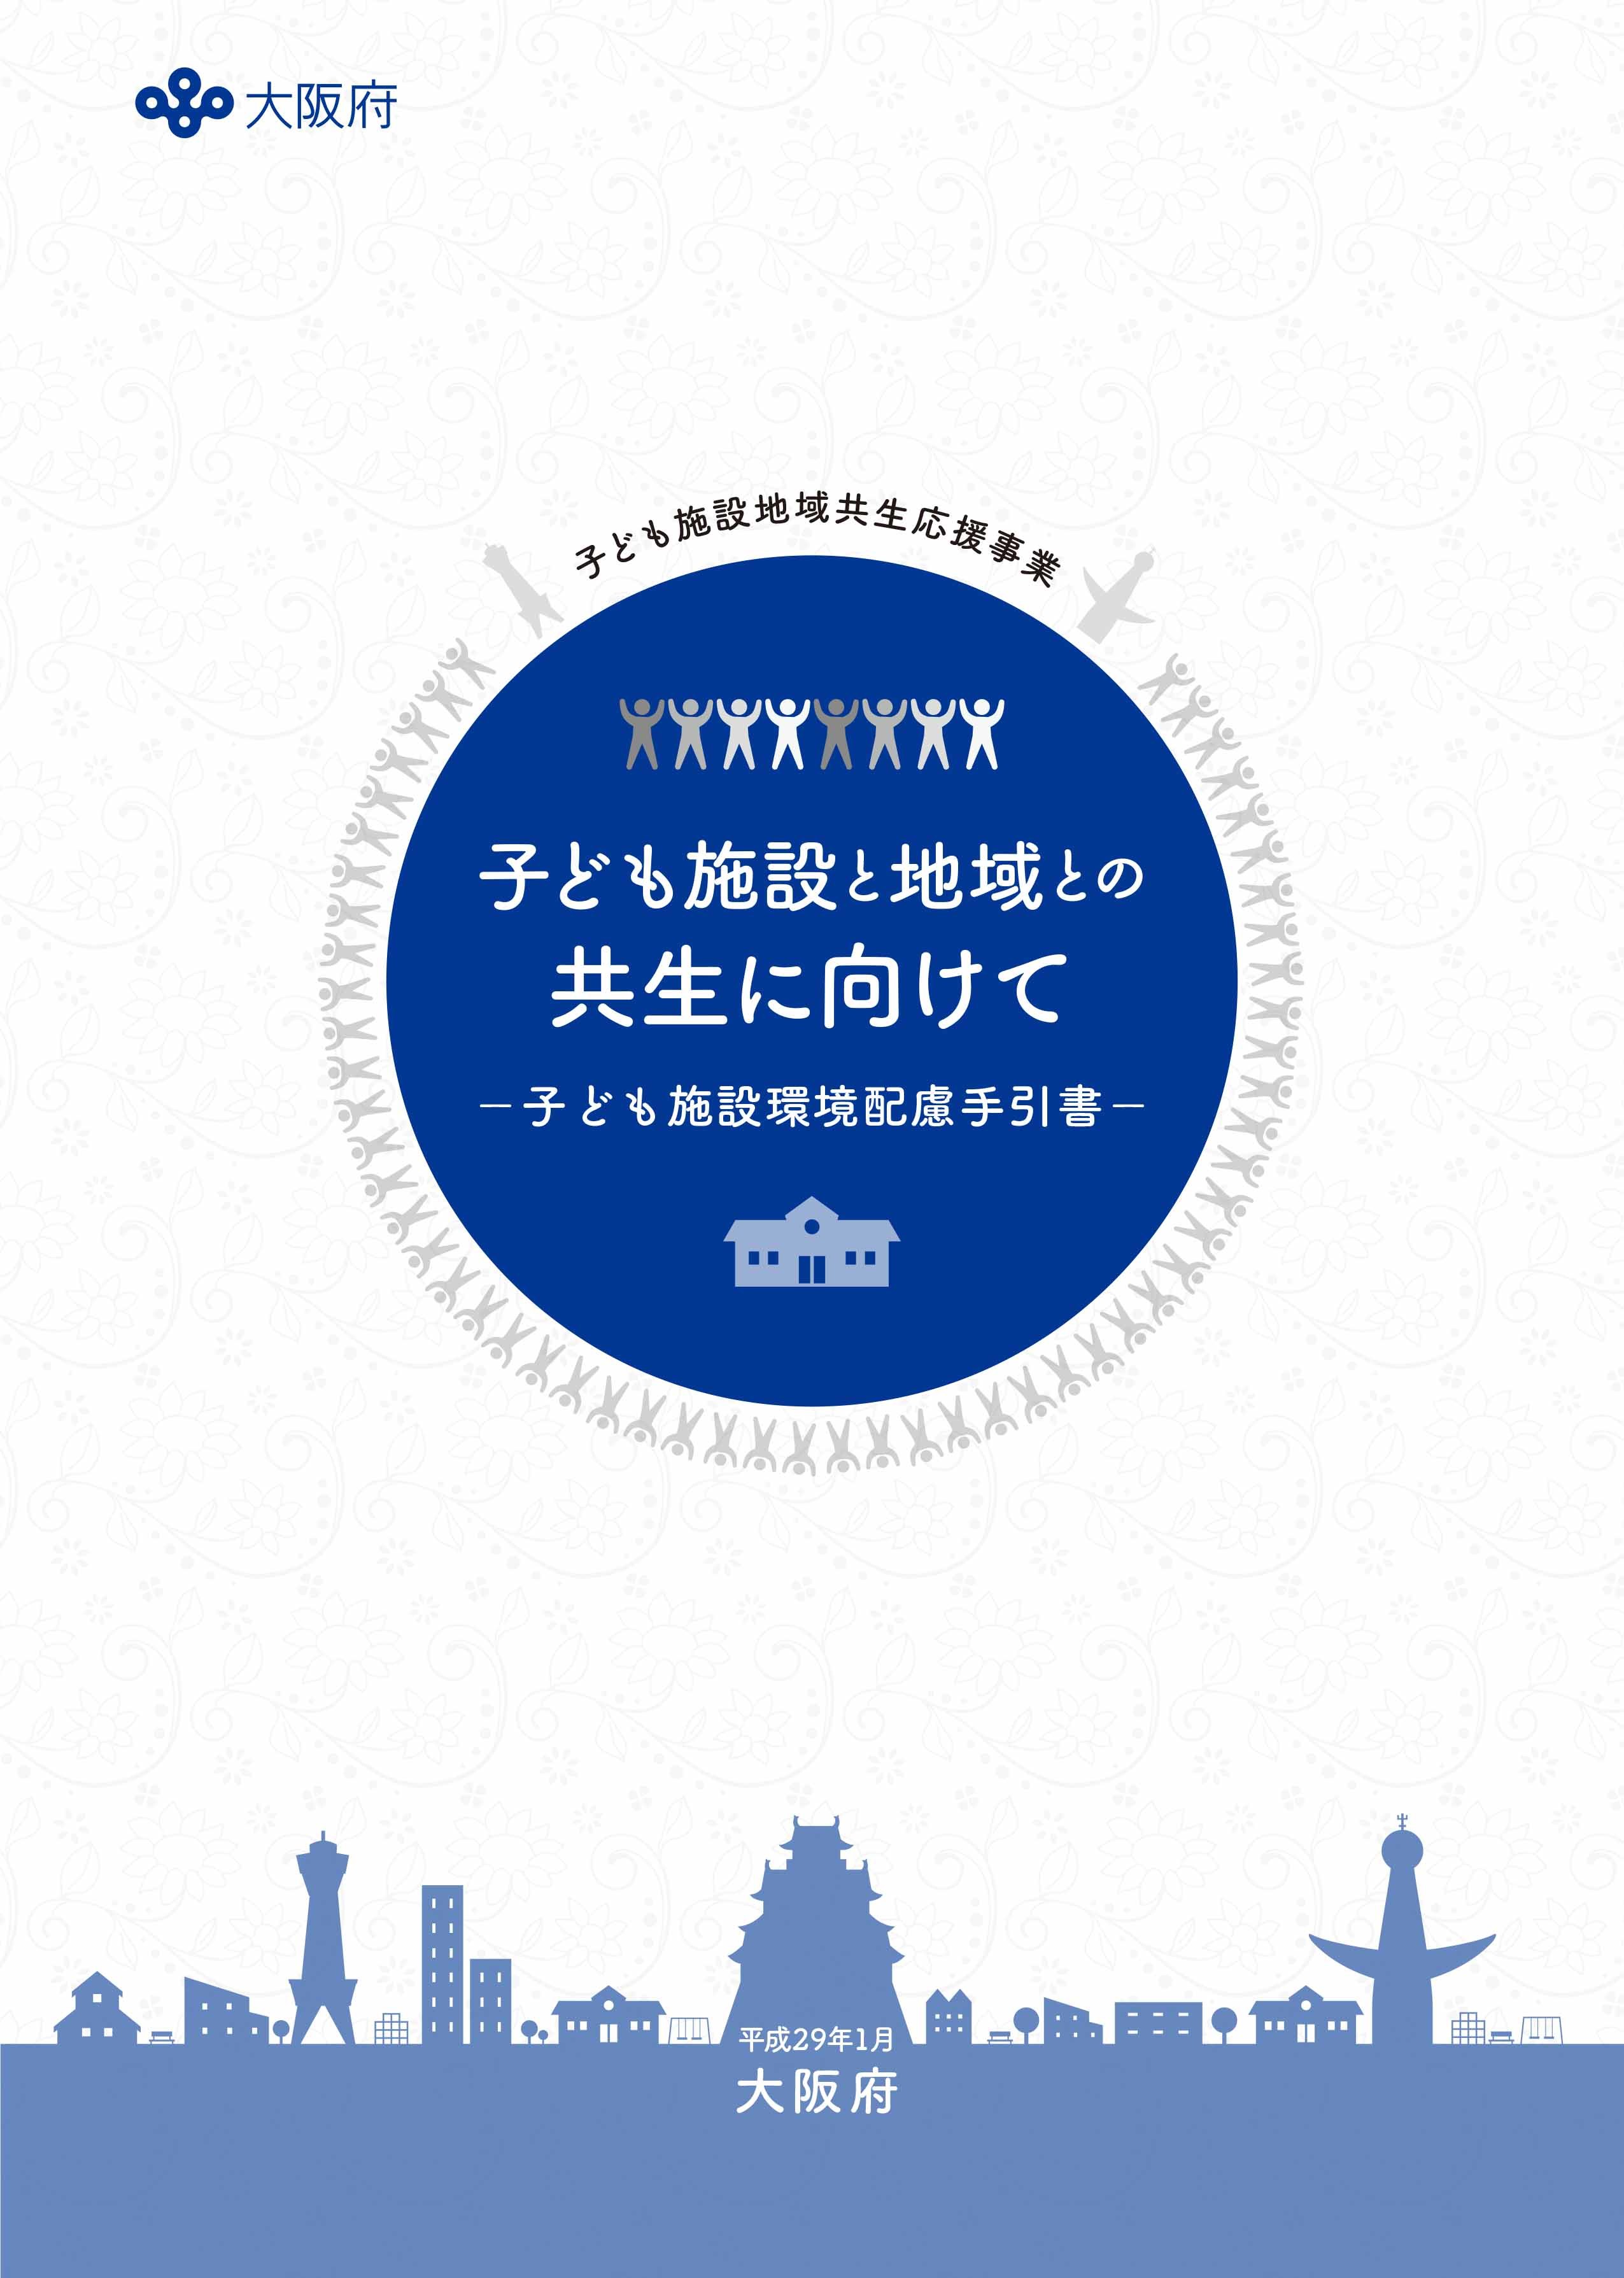 大阪府ホームページに騒音振動に関するヒアリング事例として掲載されました_a0279334_15514239.jpg